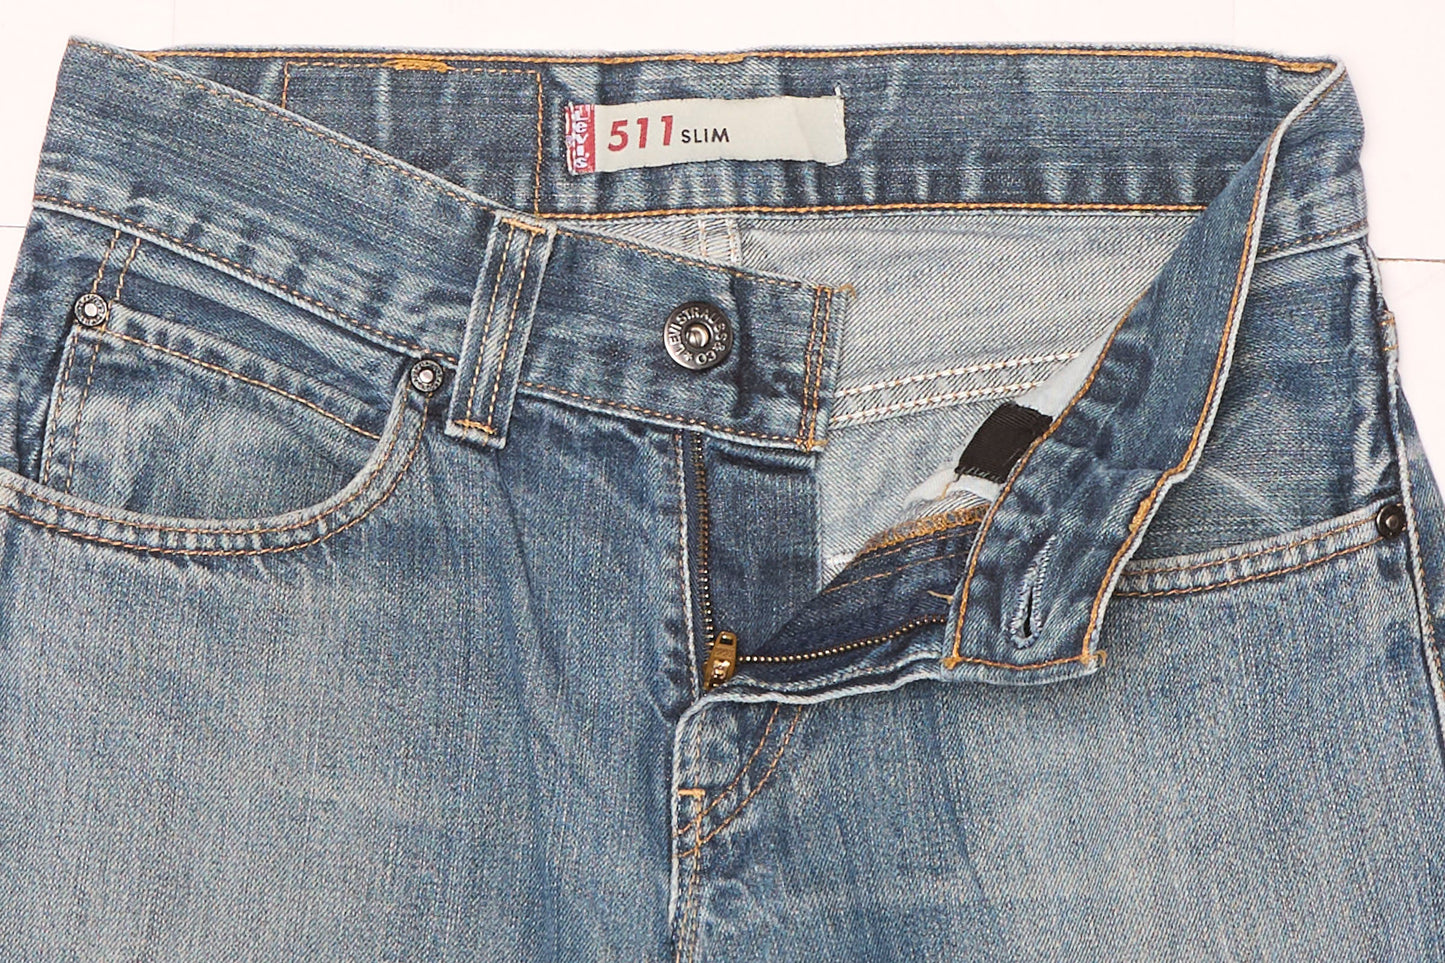 Jeans Levis de corte recto con cremallera - Ancho 29" Largo 34"